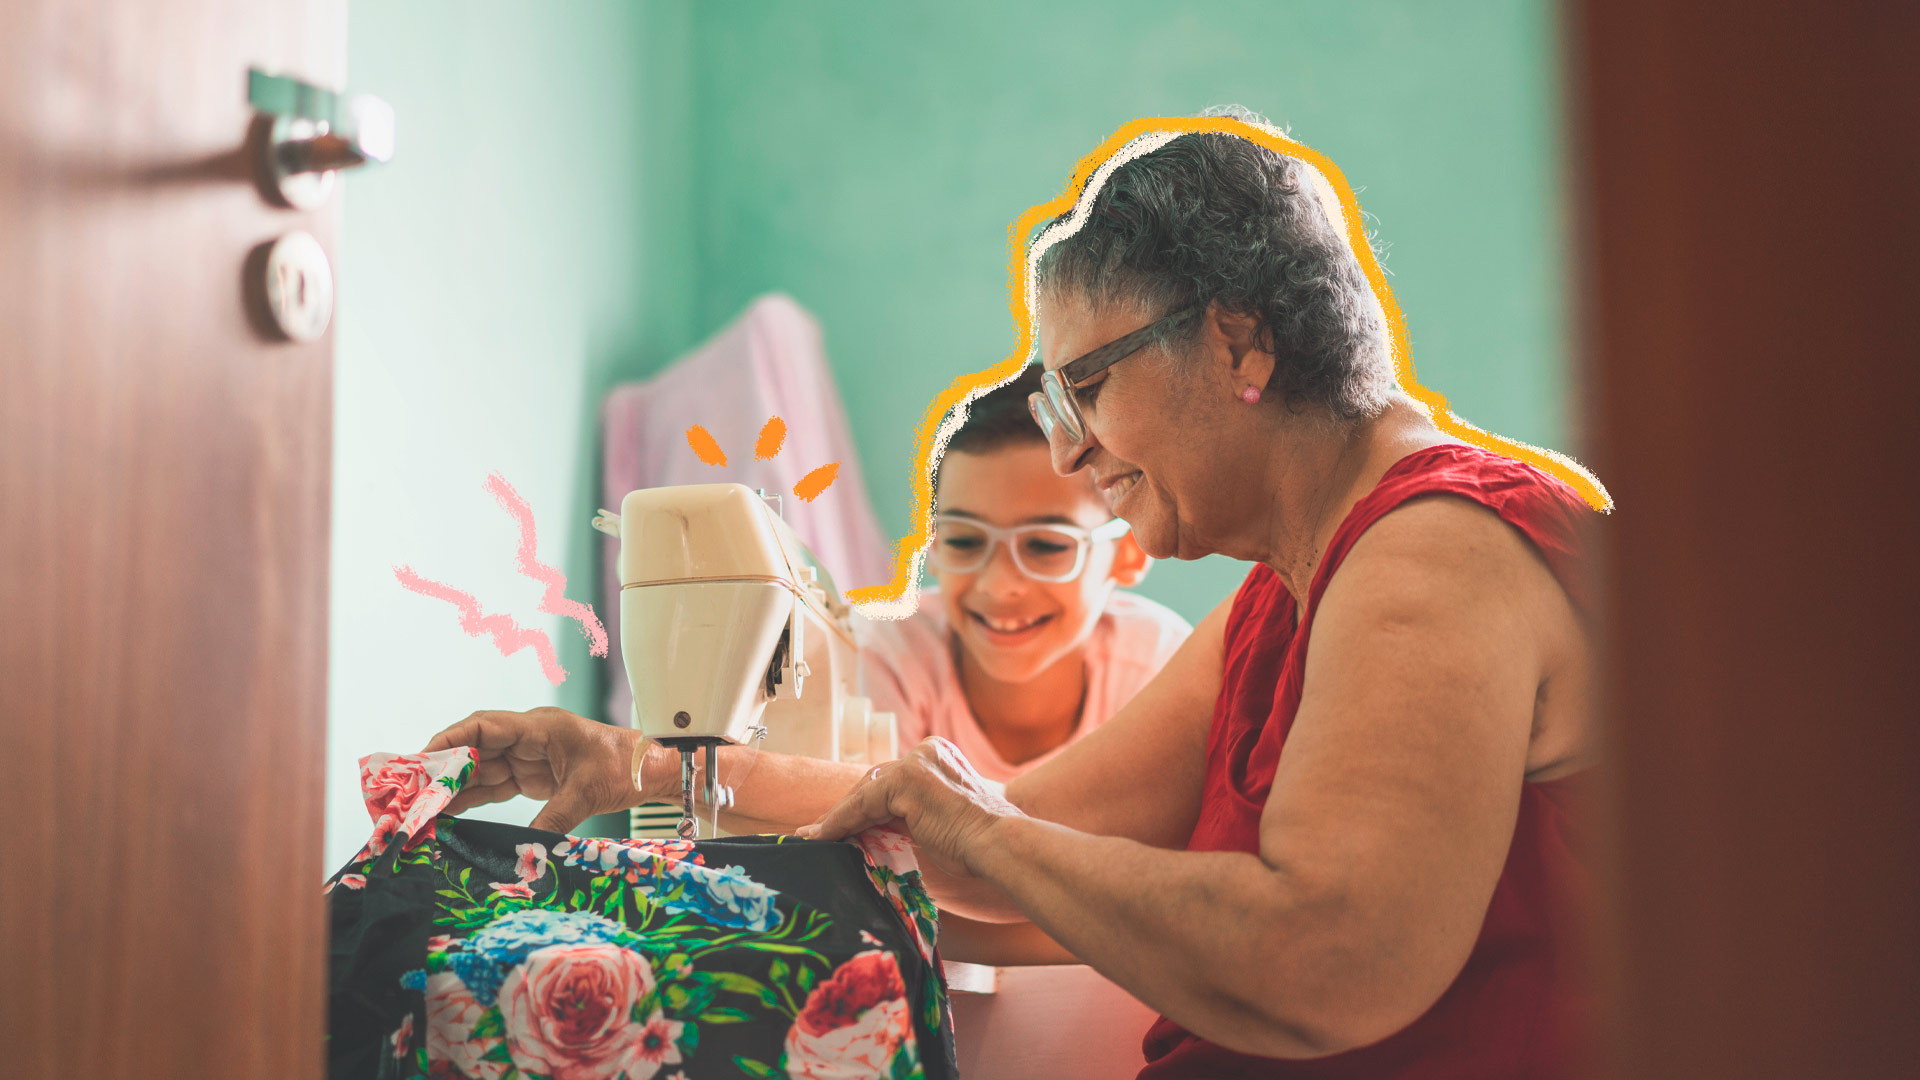 Imagem de uma criança sentada ao lado da avó enquanto ela usa a máquina de costura. Ambos usam óculos e sorriem.